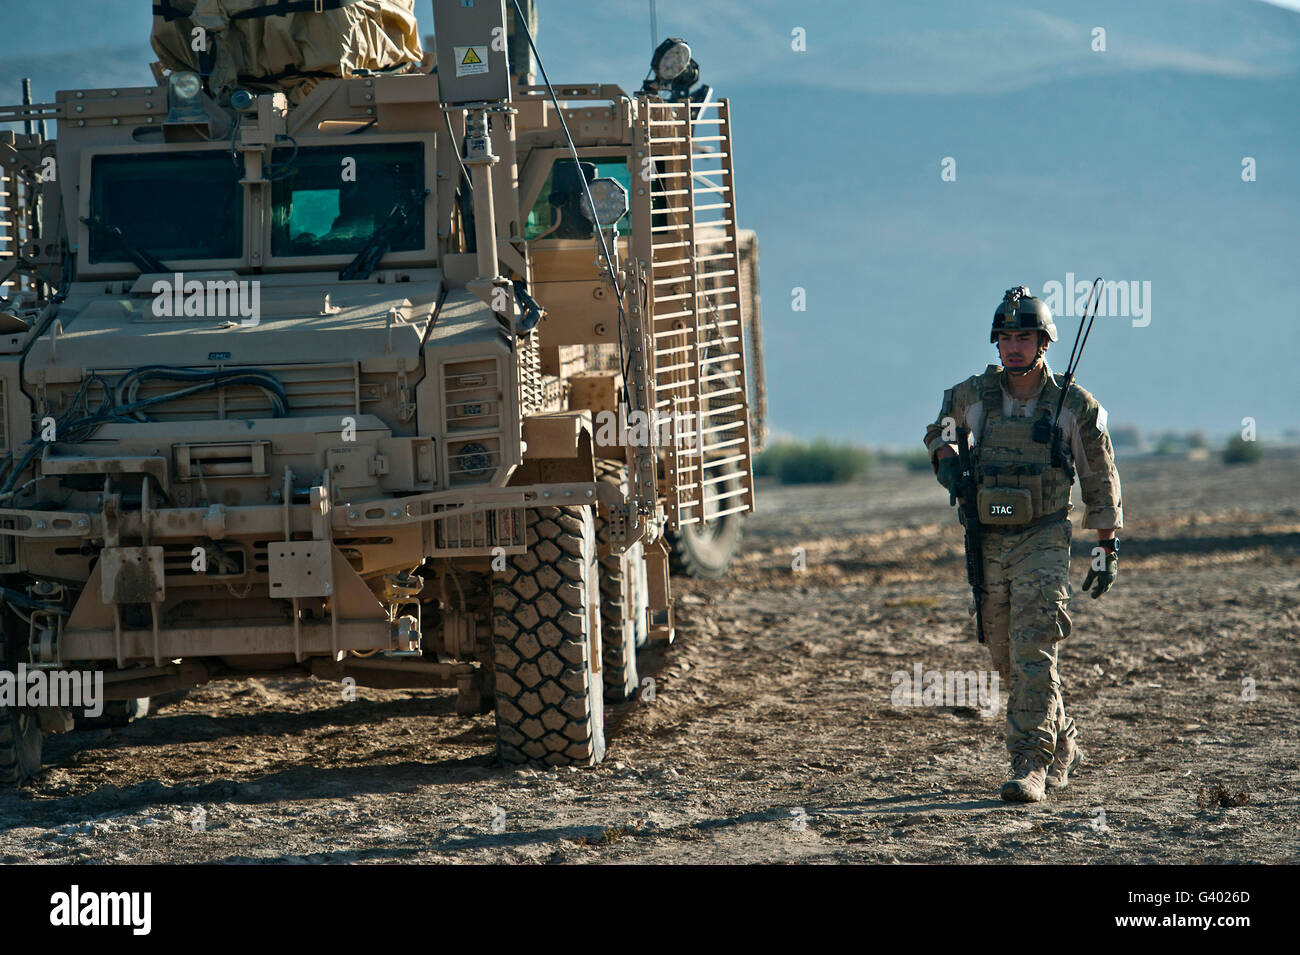 U.S. Air Force de la finale de l'attaque conjointe Controller passe devant un véhicule MRAP lors d'une patrouille. Banque D'Images